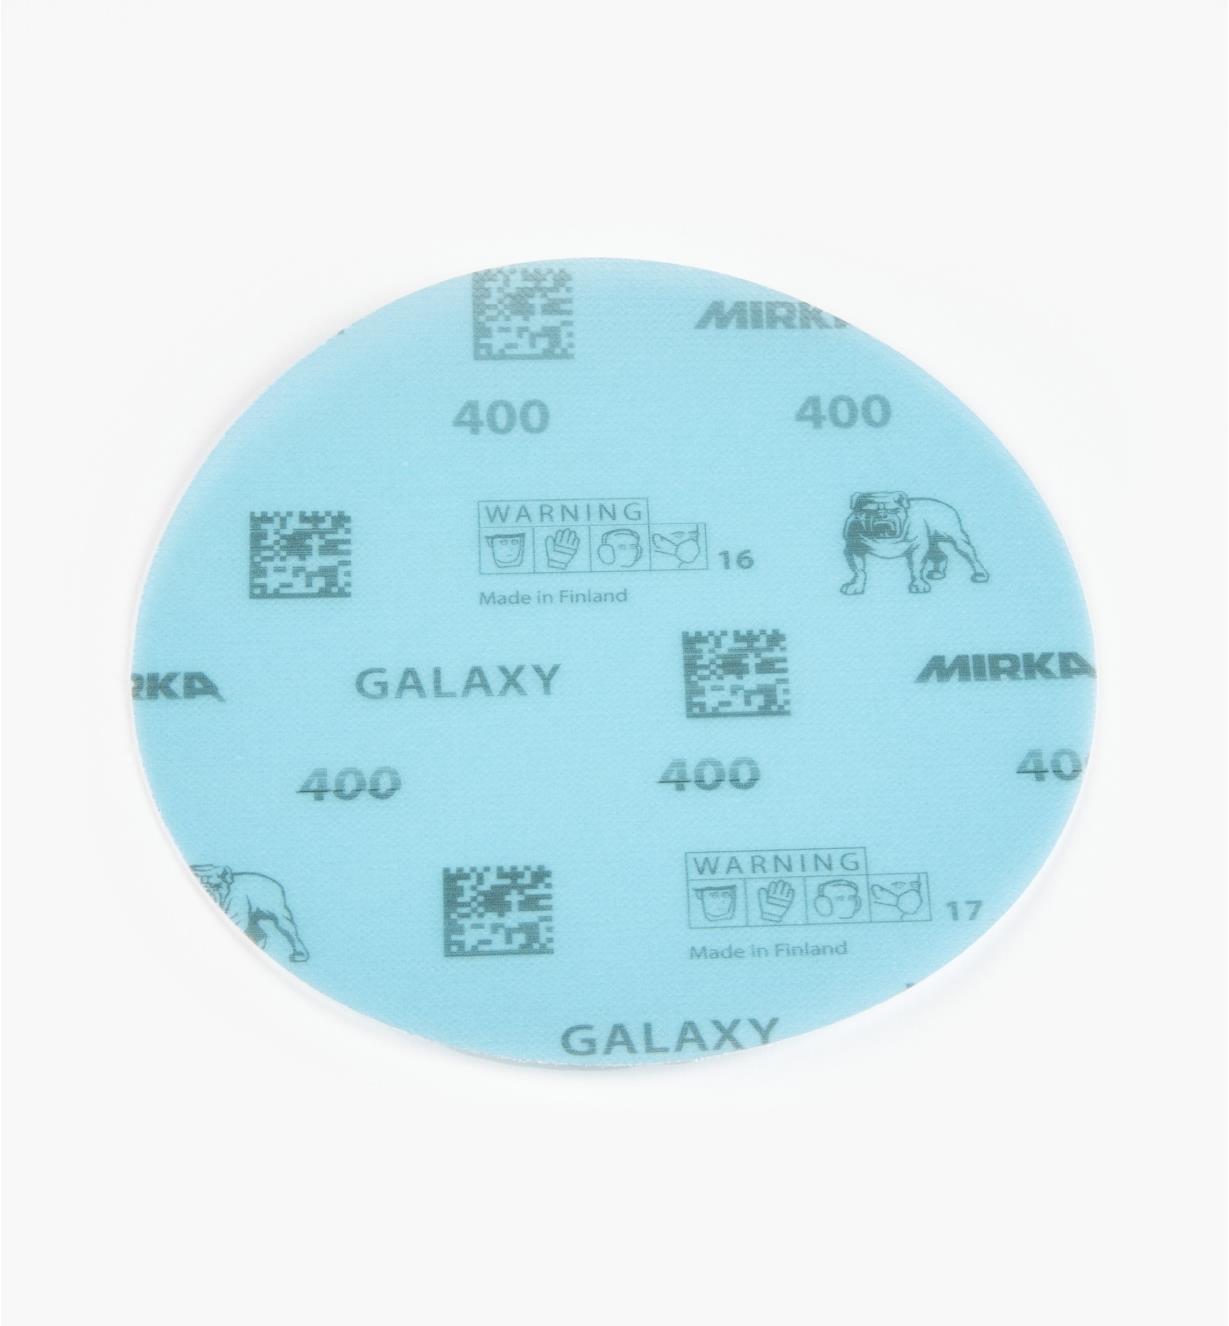 08K2111 - Disque abrasif autoagrippant Galaxy, 6 po, grain 400, l'unité